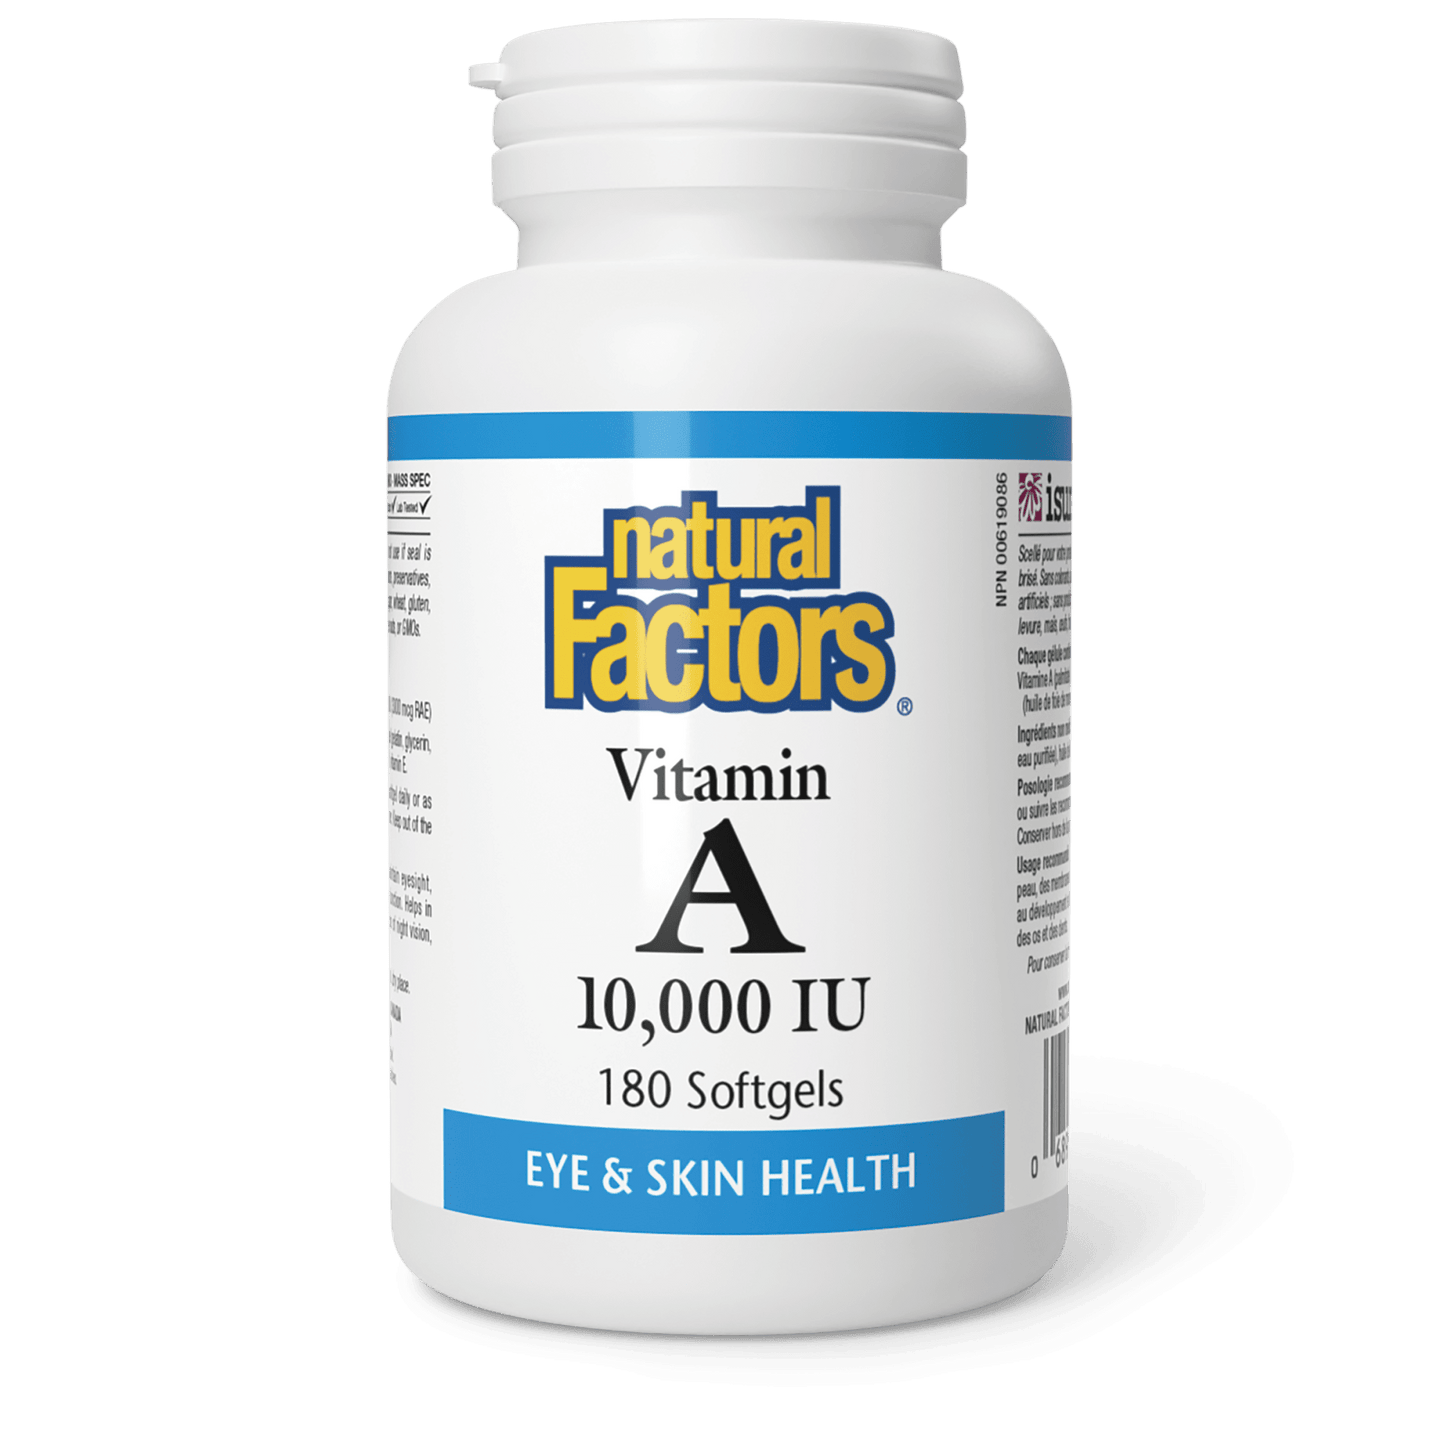 Vitamin A 10,000 IU, Natural Factors|v|image|1041